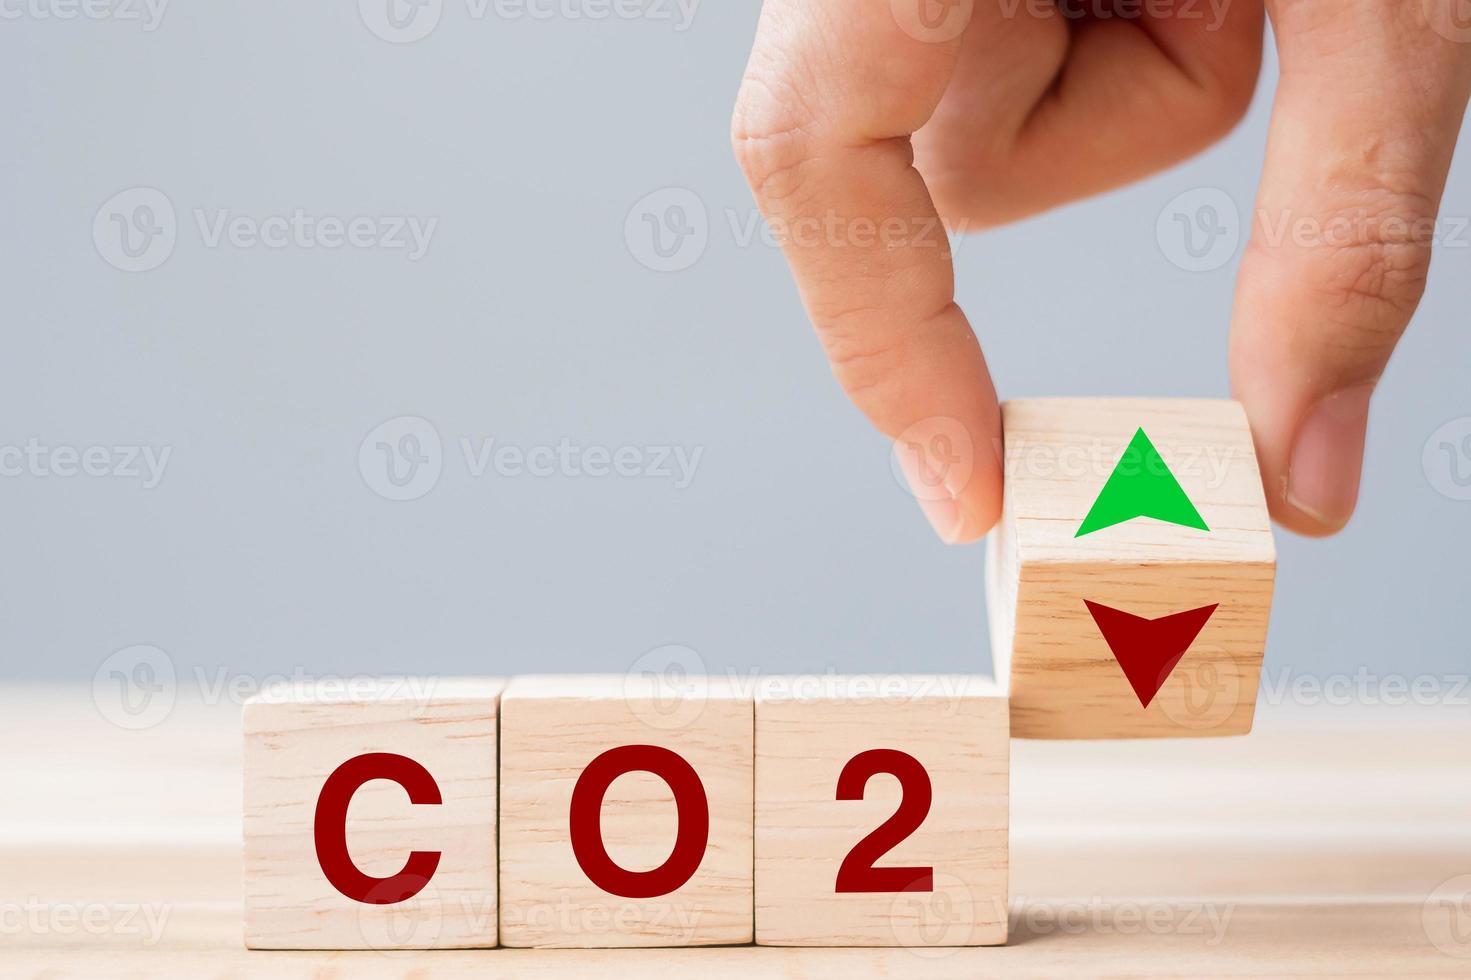 voltear a mano bloques de cubos de madera al símbolo de flecha arriba y abajo con texto de dióxido de carbono co2 en el fondo de la mesa. conceptos de carbono libre, energía alternativa y cambio climático global foto